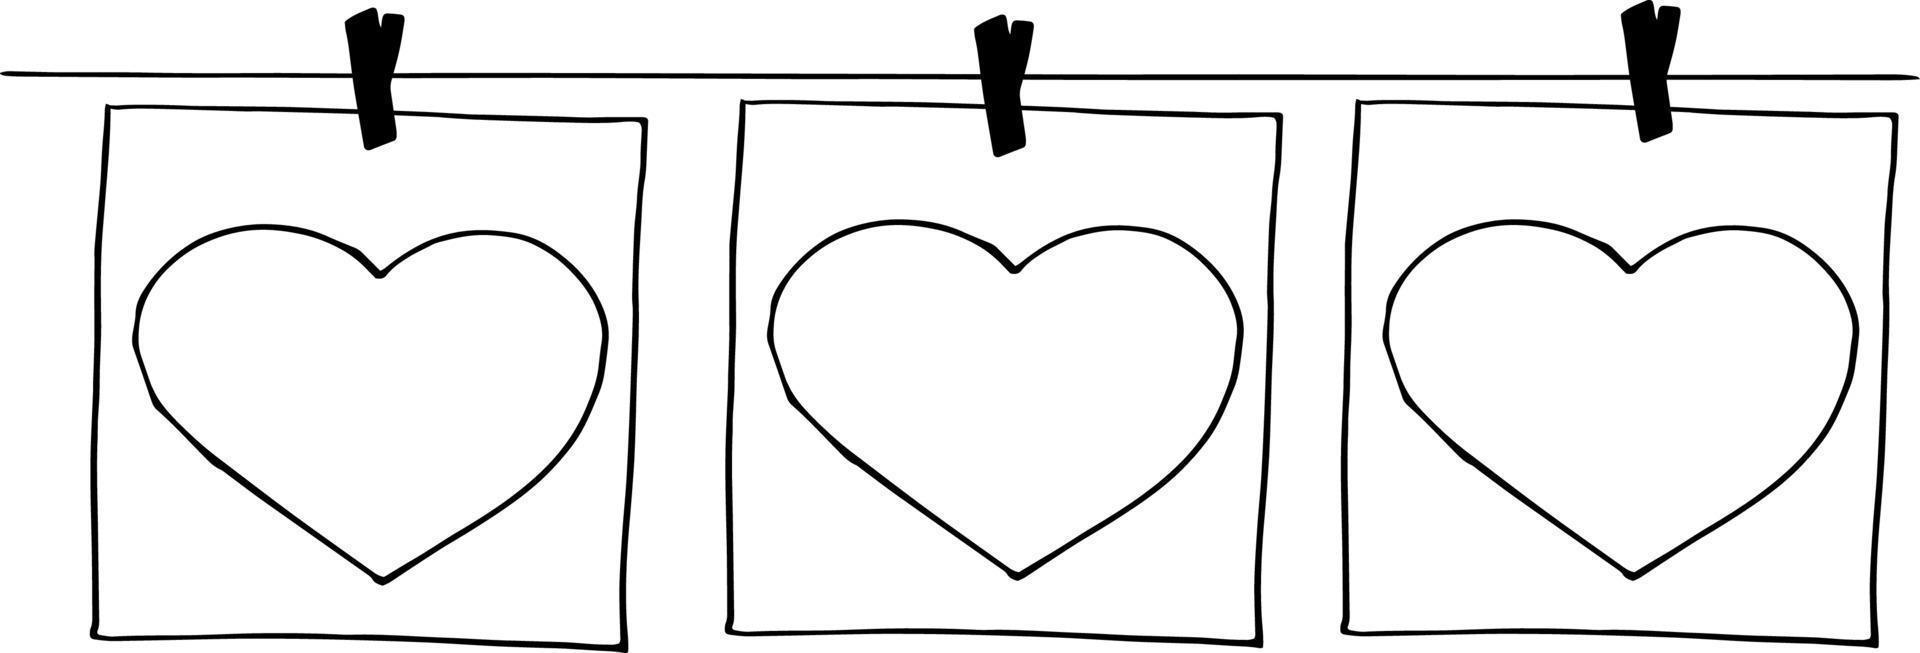 el corazón y el marco cuelgan de pinzas para la ropa en un bosquejo de hilo dibujado a mano. cartel de plantilla, tarjeta, decoración, monocromo, minimalismo, amor, día de san valentín vector